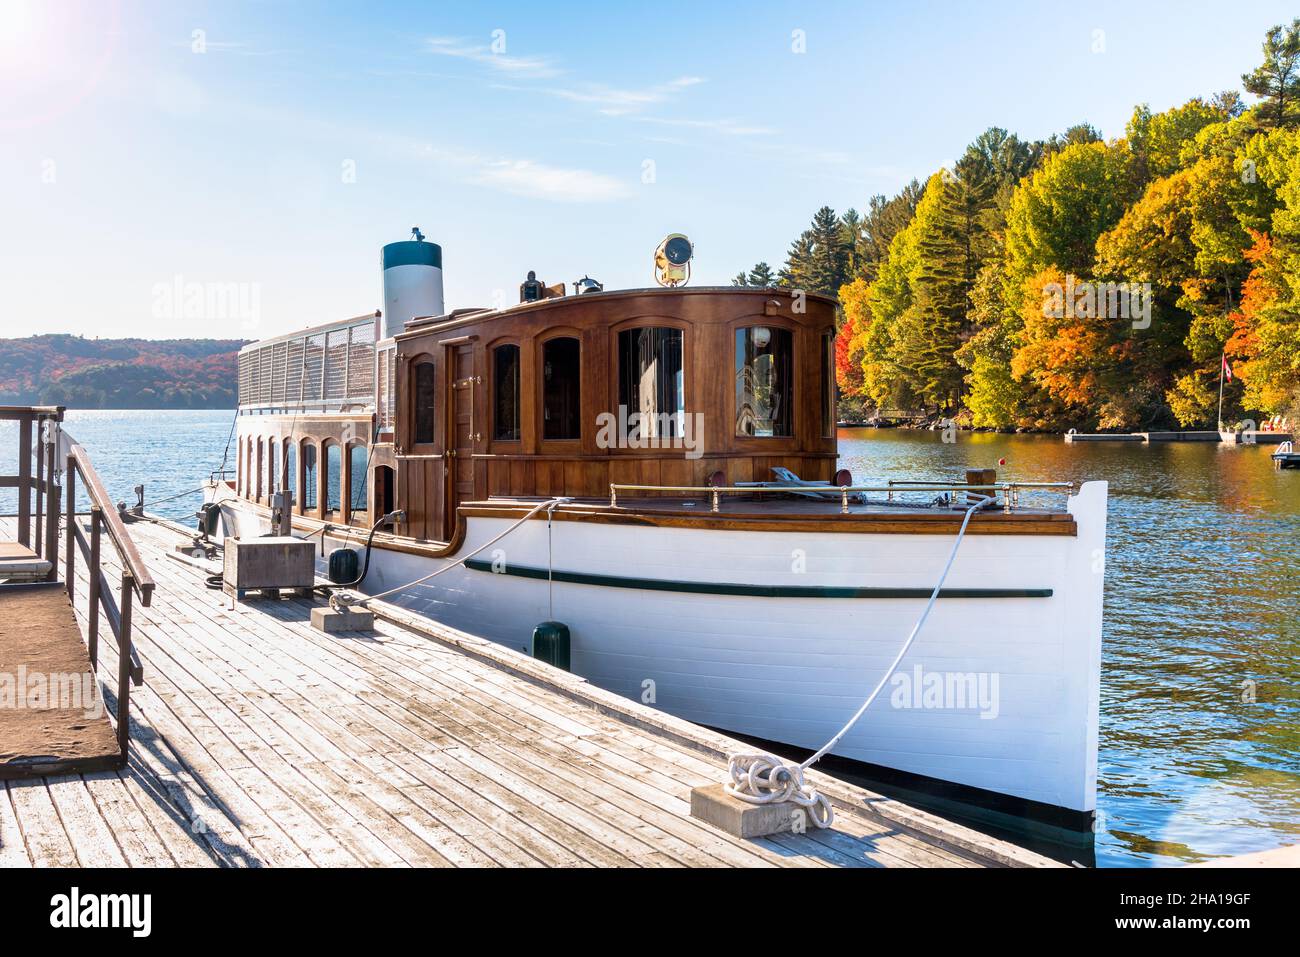 Altes Dampfschiff, das an einem sonnigen Tag an einem hölzernen Pier am See mit bunten Herbstbäumen im Hintergrund vertäut ist Stockfoto